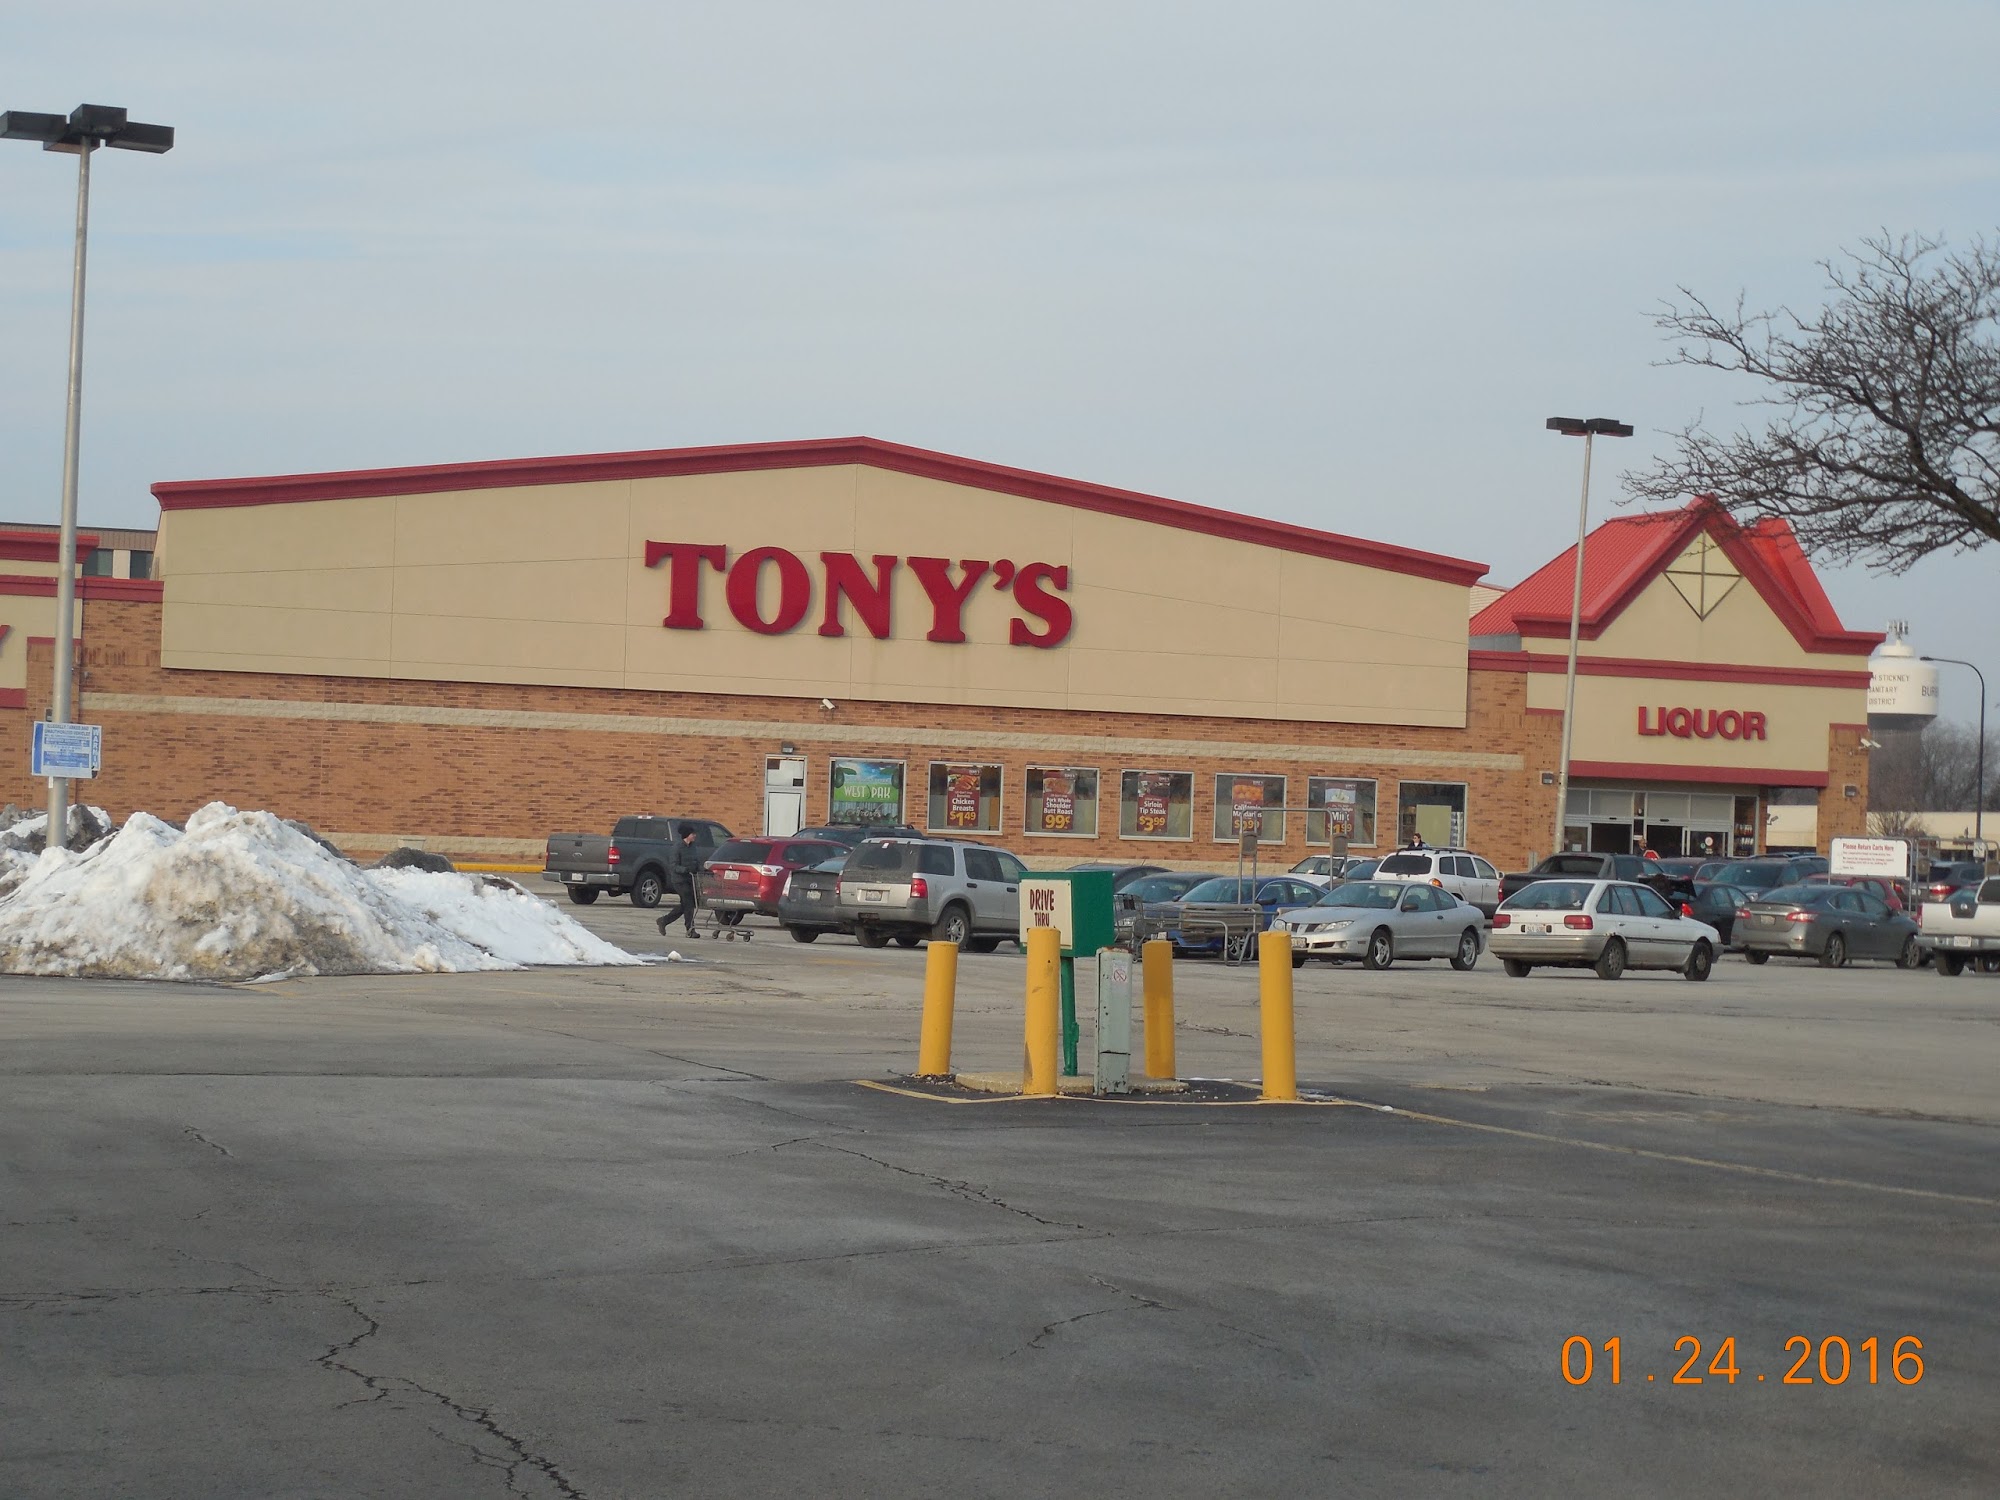 Tony's Fresh Market